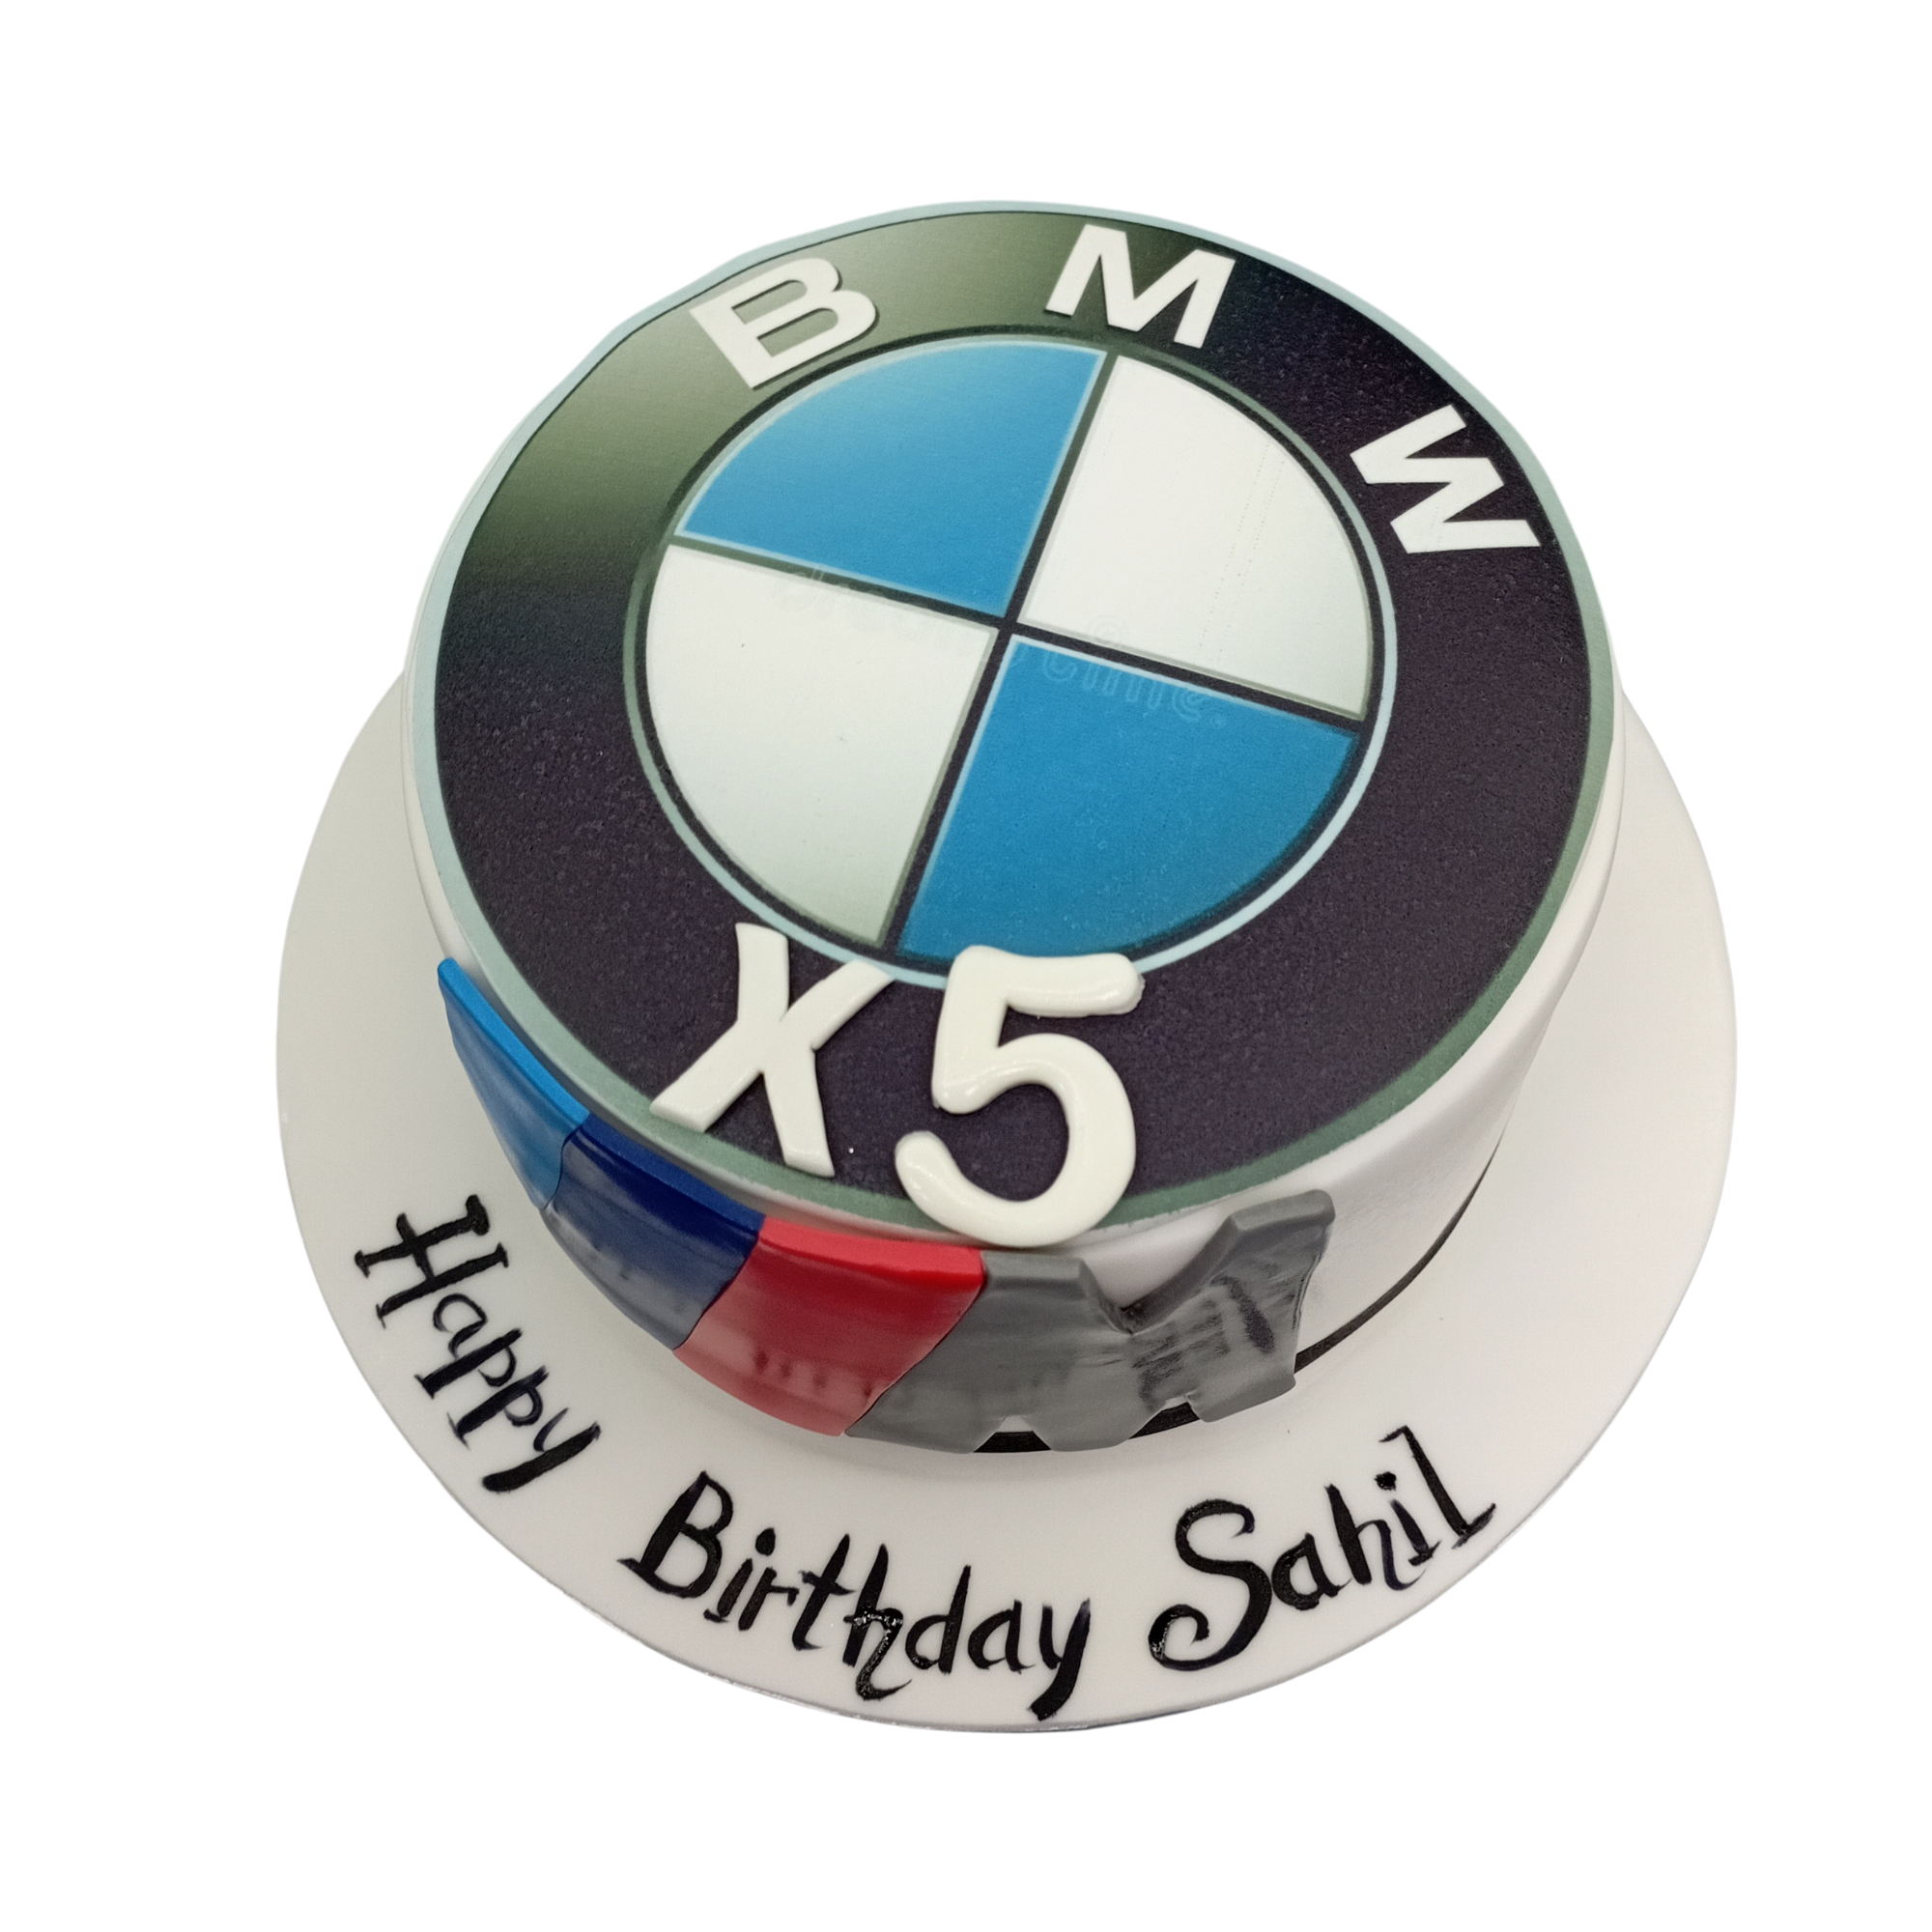 BMW x 5 Cake